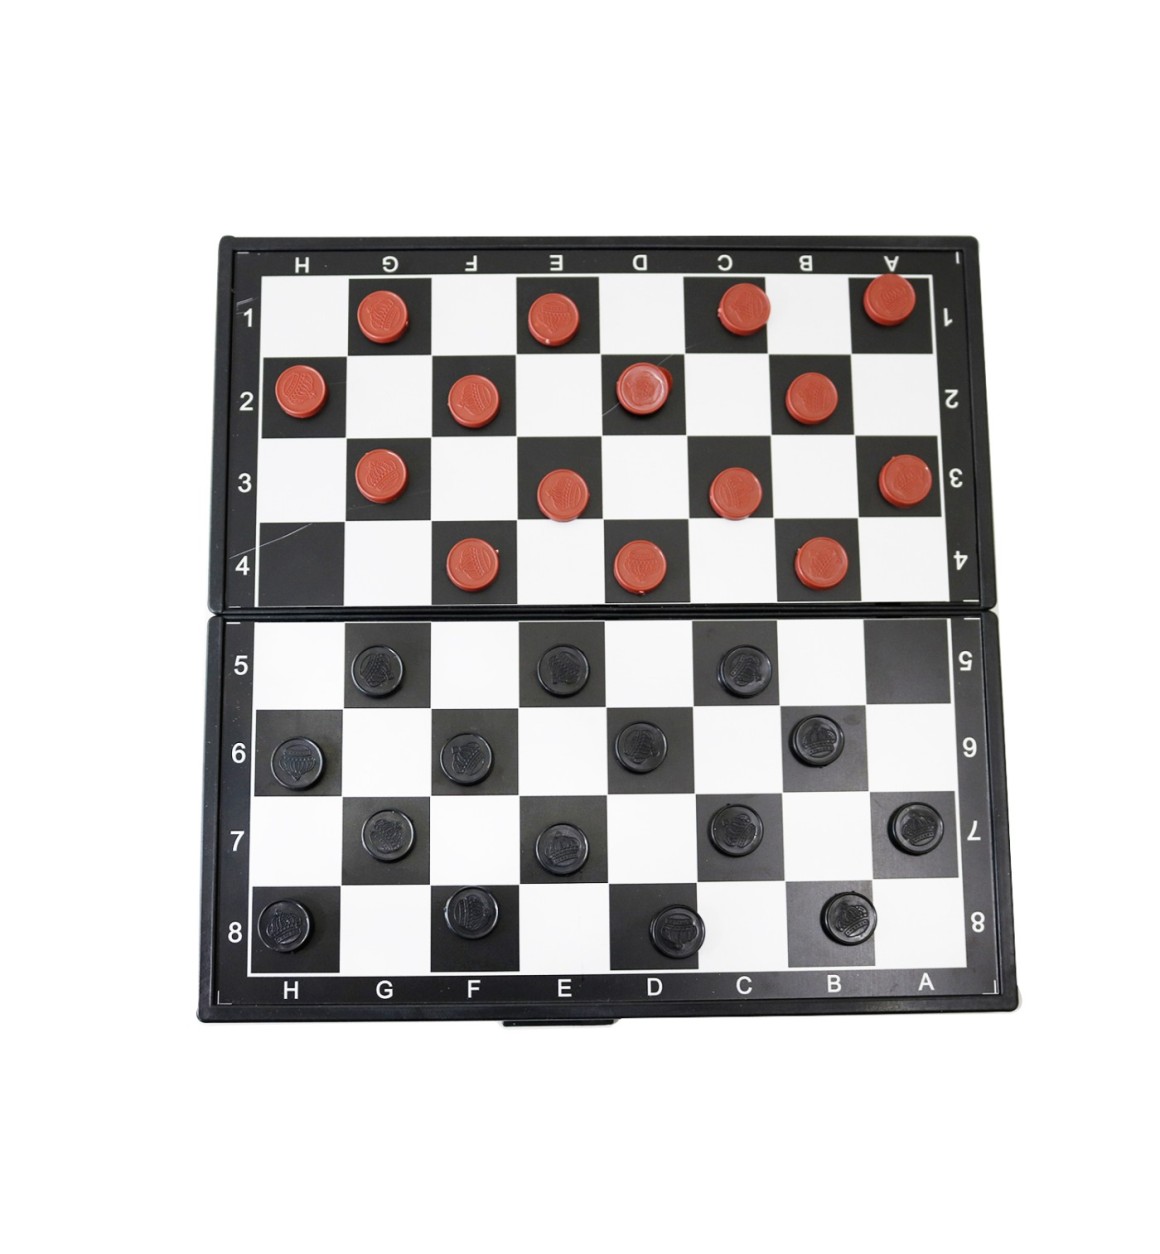 Gamão tabela jogo de xadrez figuras plástico profissional